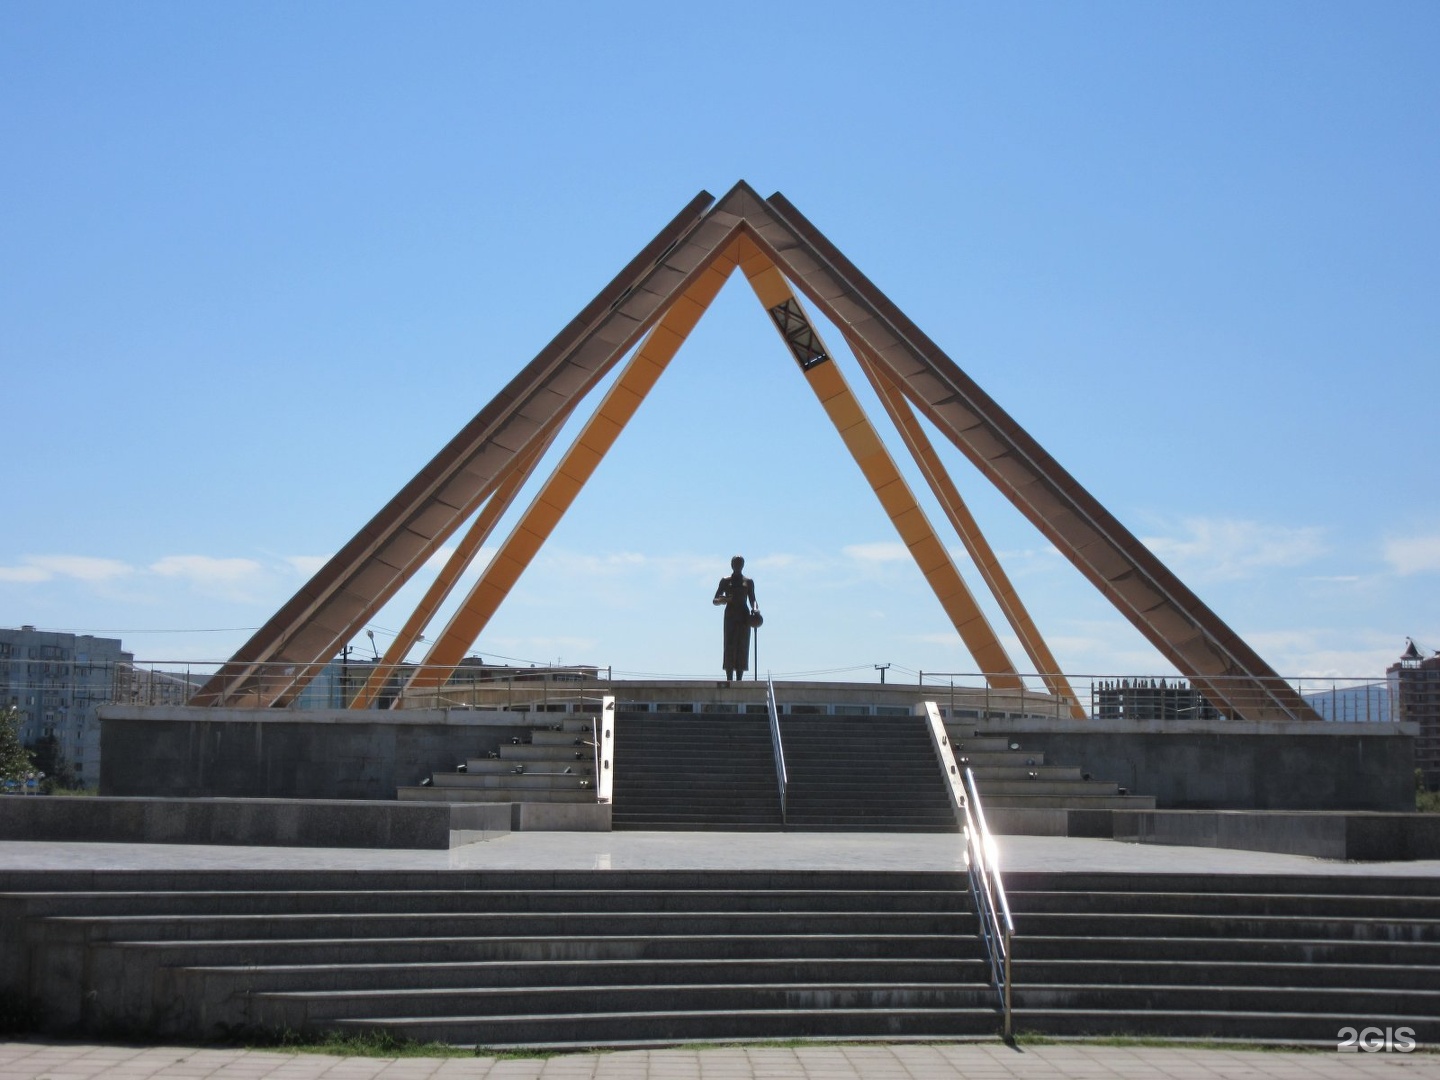 Памятник русской учительнице в Махачкале